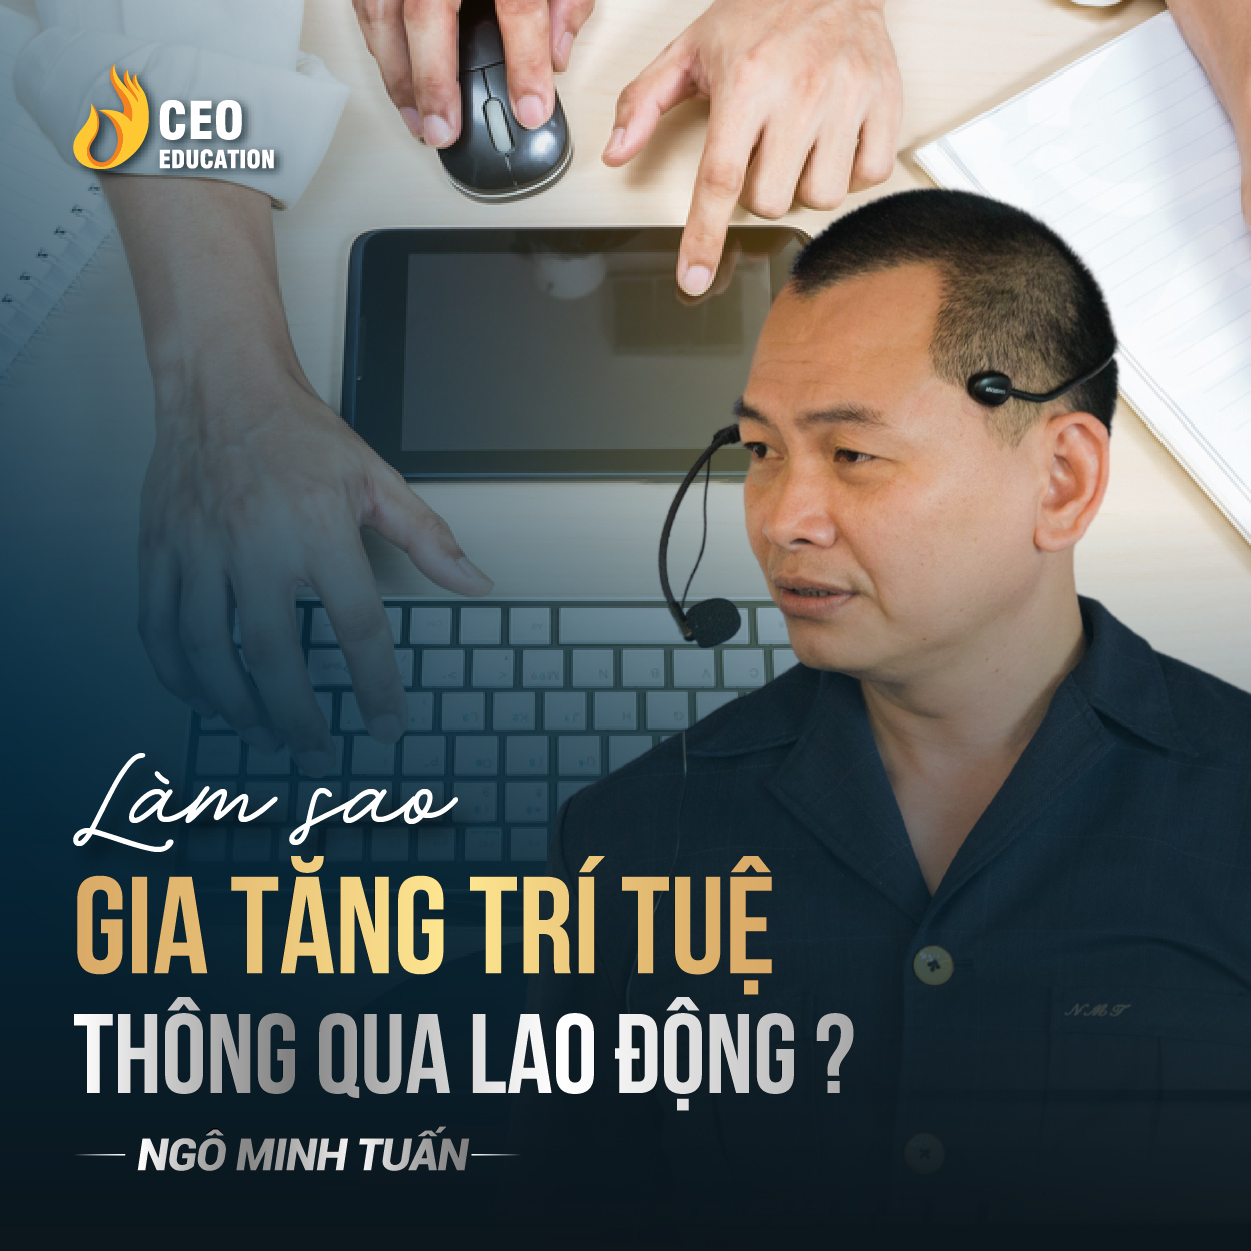 Gia tăng trí tuệ thông qua lao động | Ngô Minh Tuấn | Học Viện CEO Việt Nam